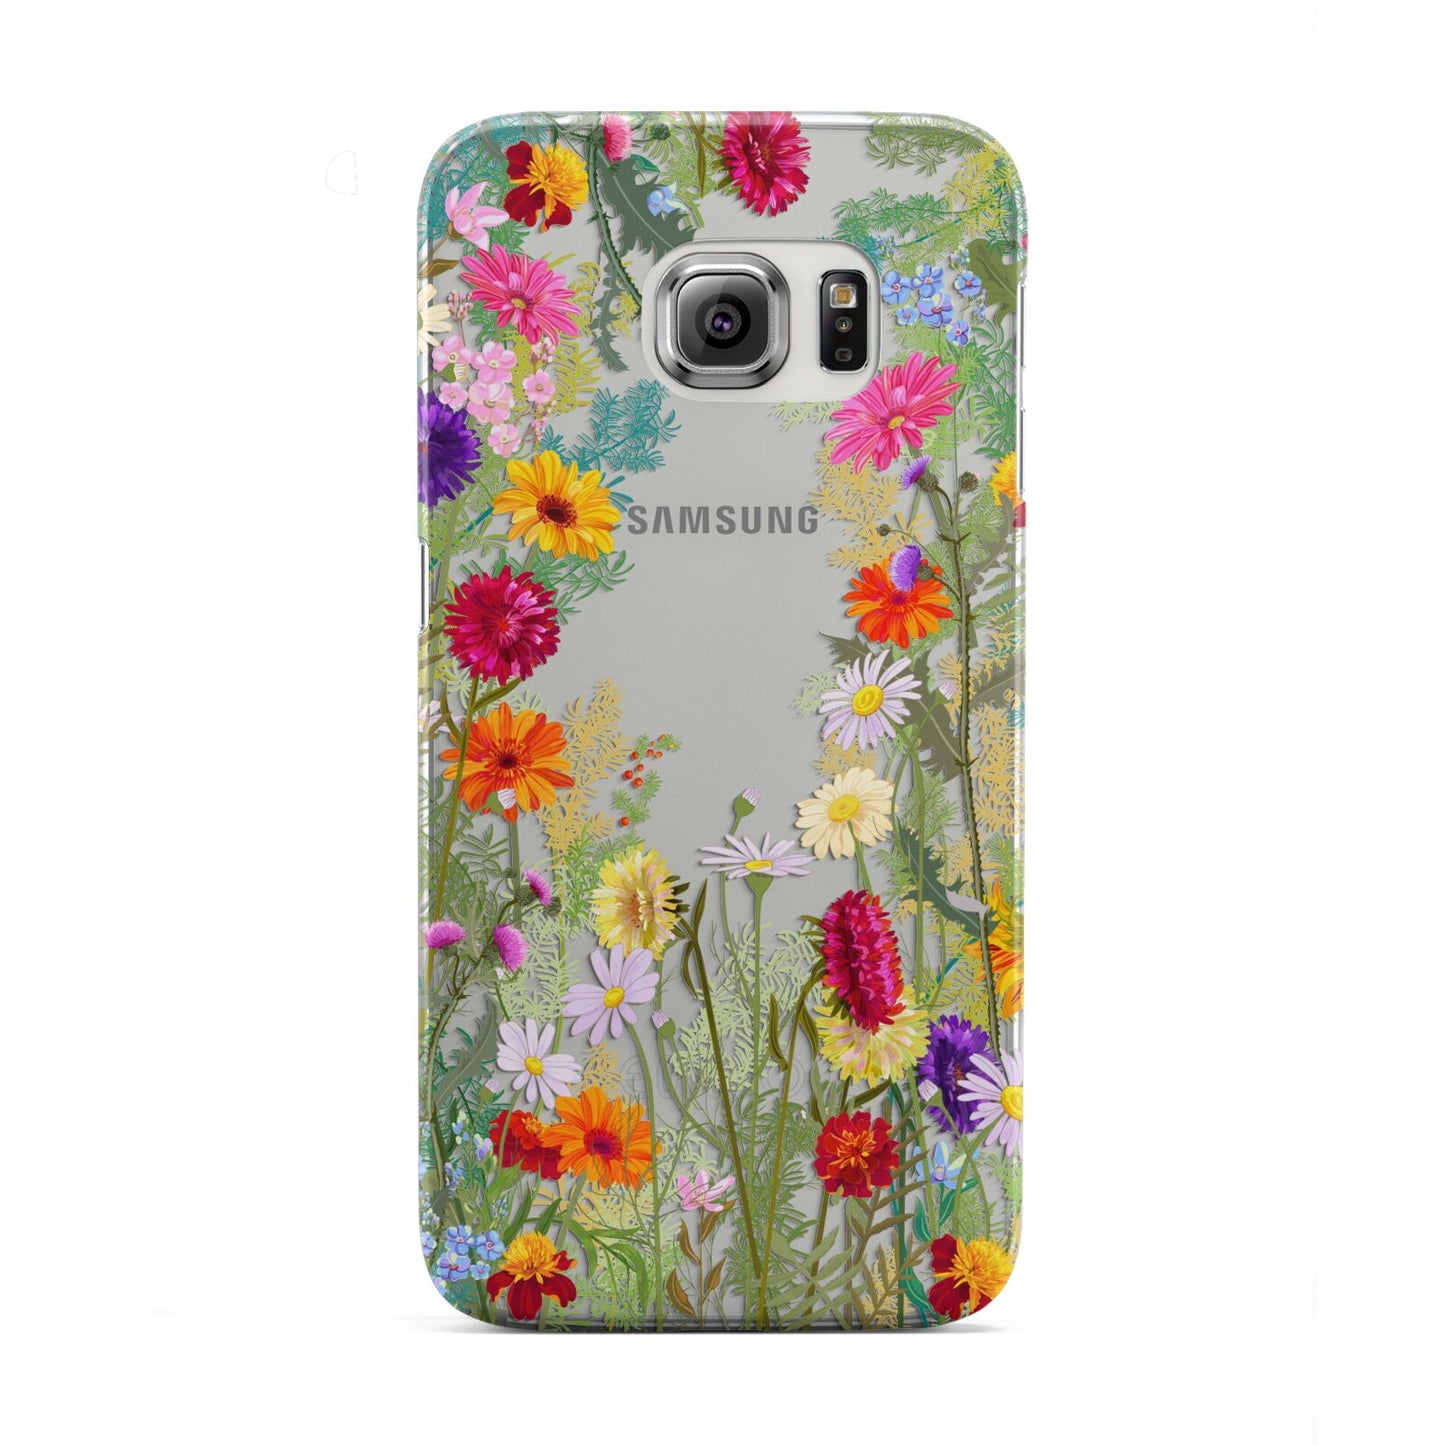 Wildflower Samsung Galaxy S6 Edge Case